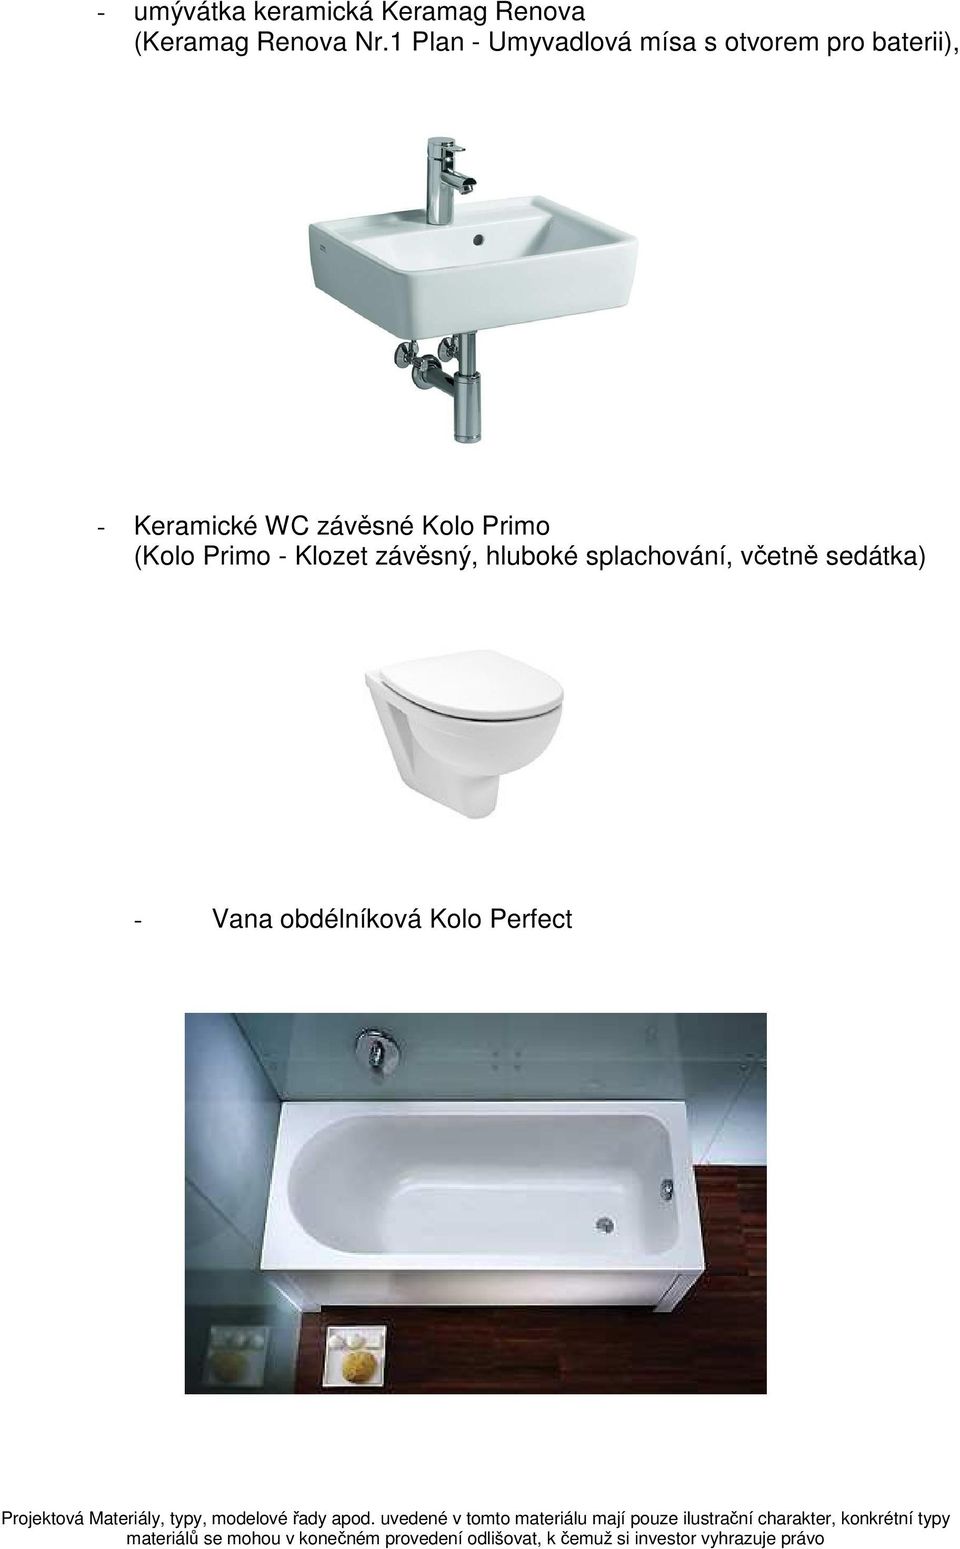 Keramické WC závěsné Kolo Primo (Kolo Primo - Klozet